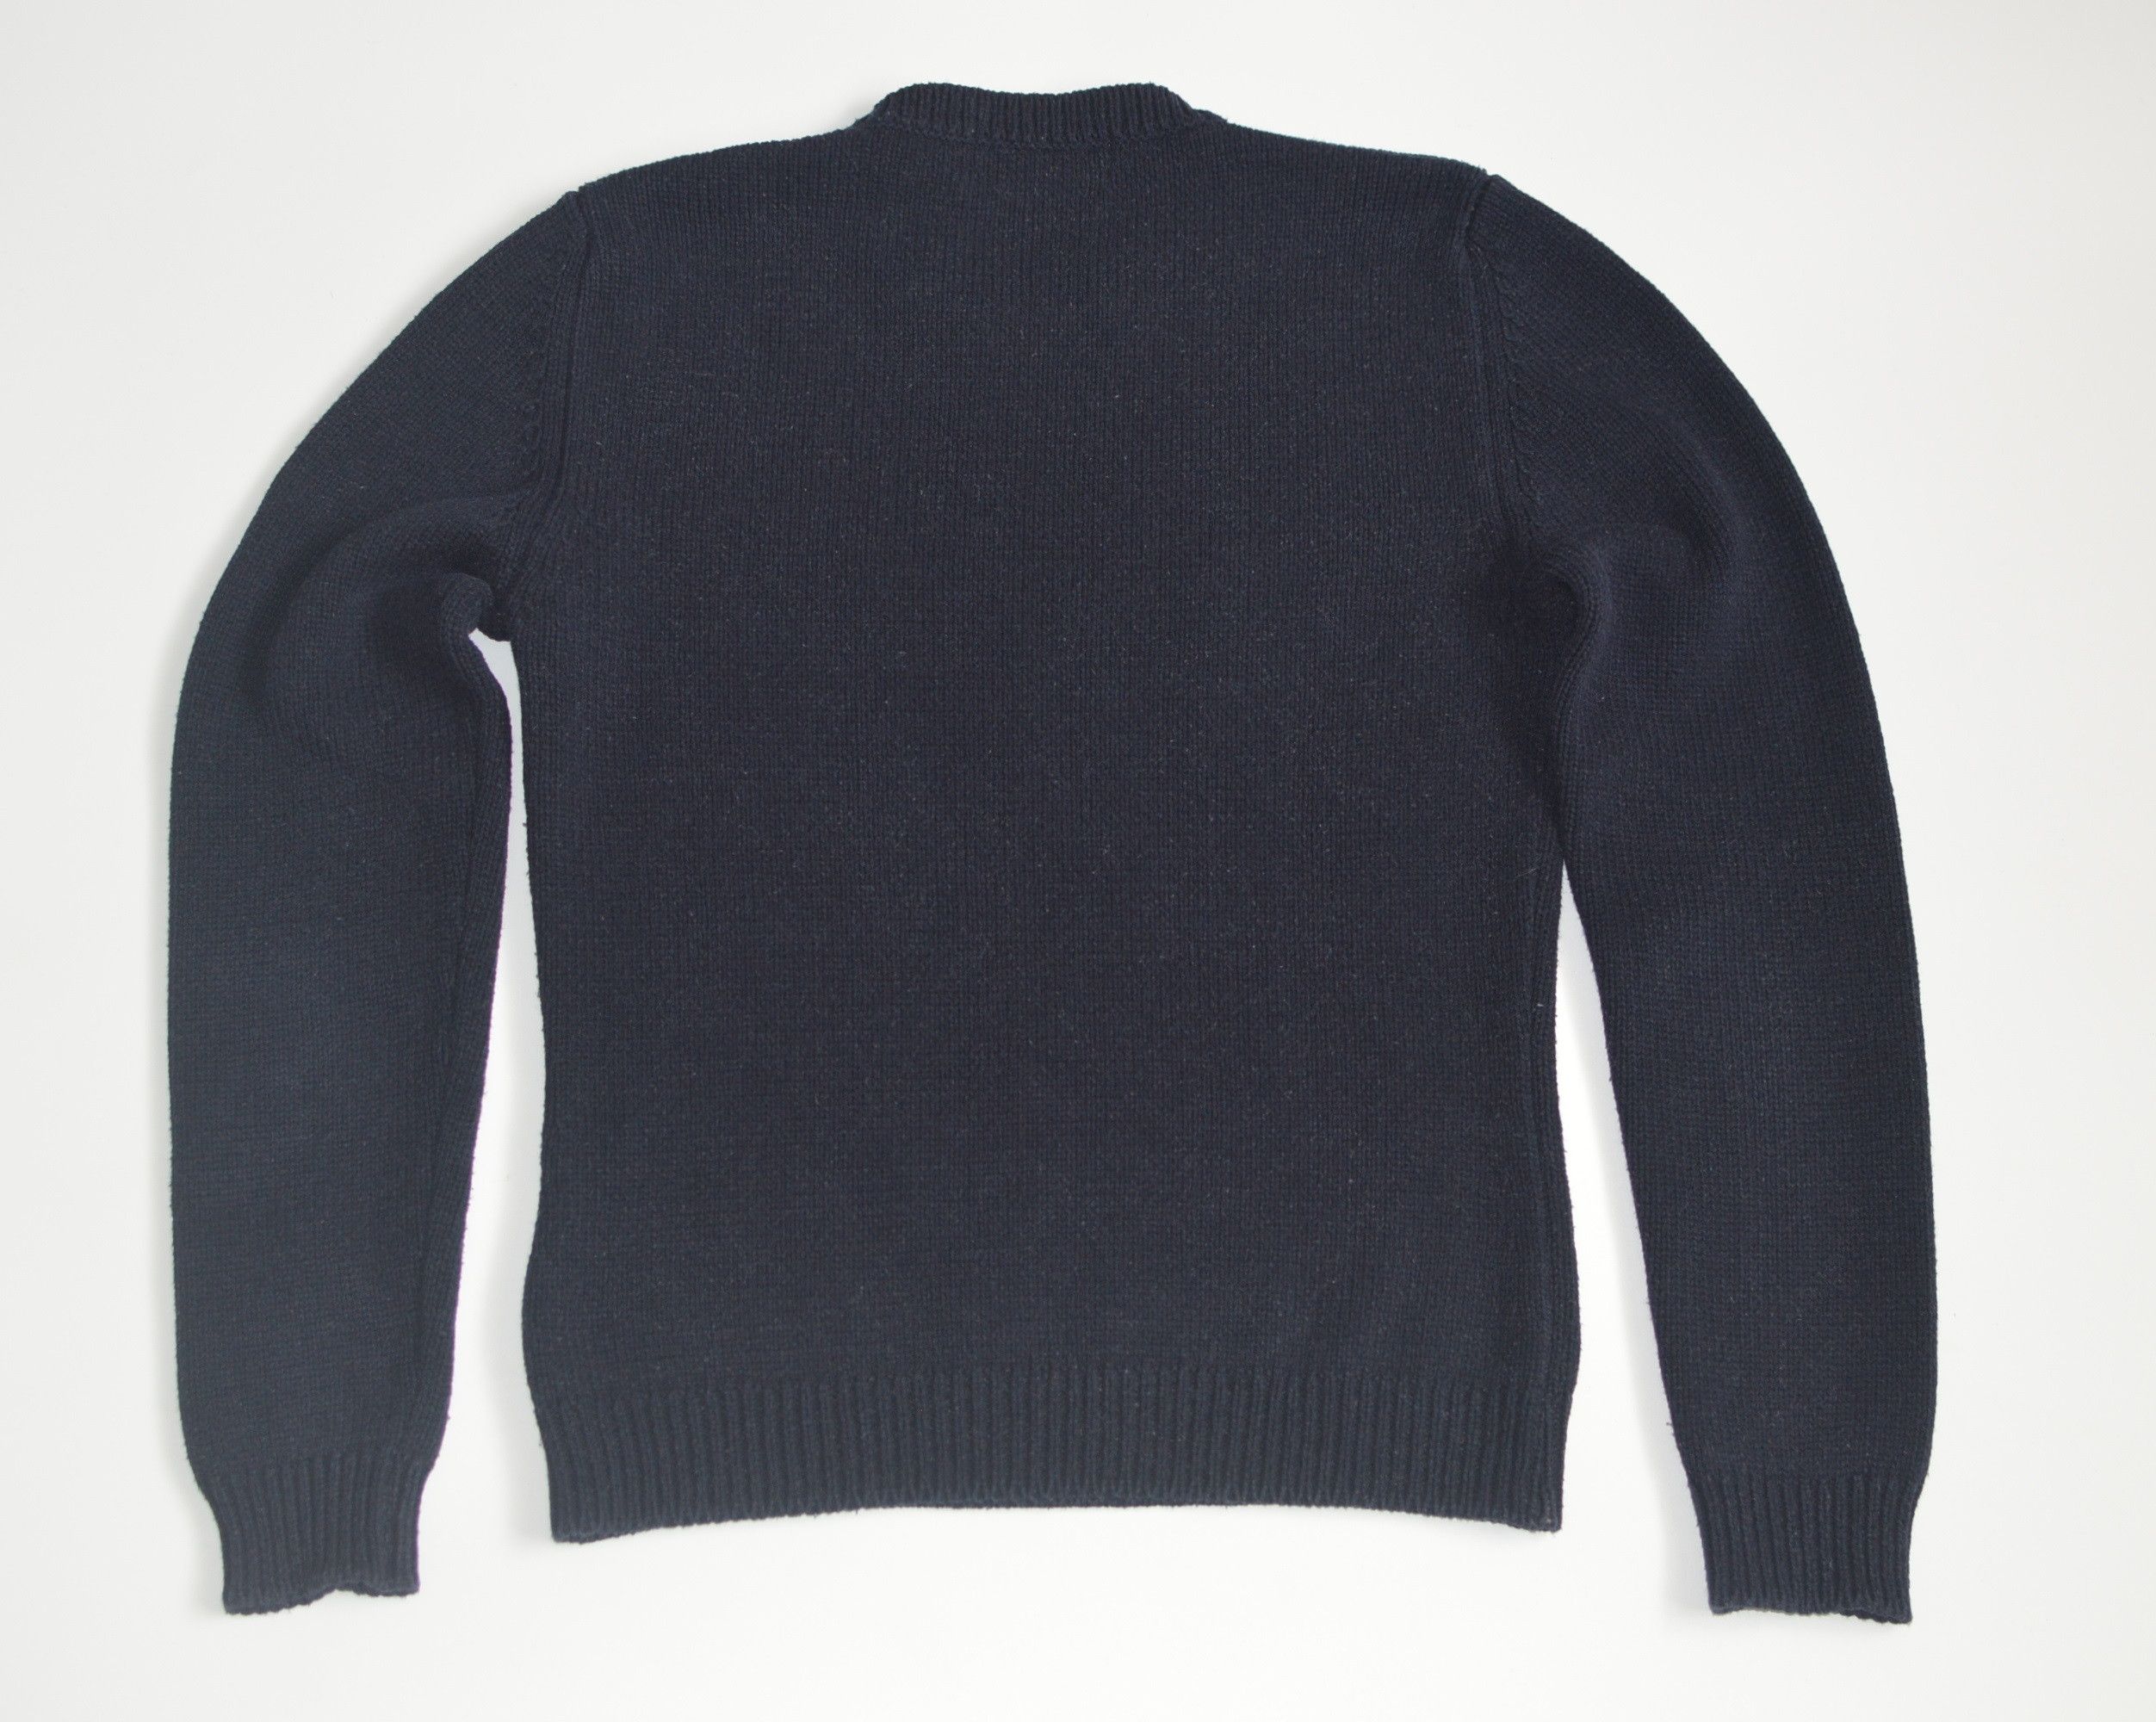 Vintage Vintage Thomas Burberry 1835 Sweater Wmns Size US S / EU 44-46 / 1 - 2 Preview